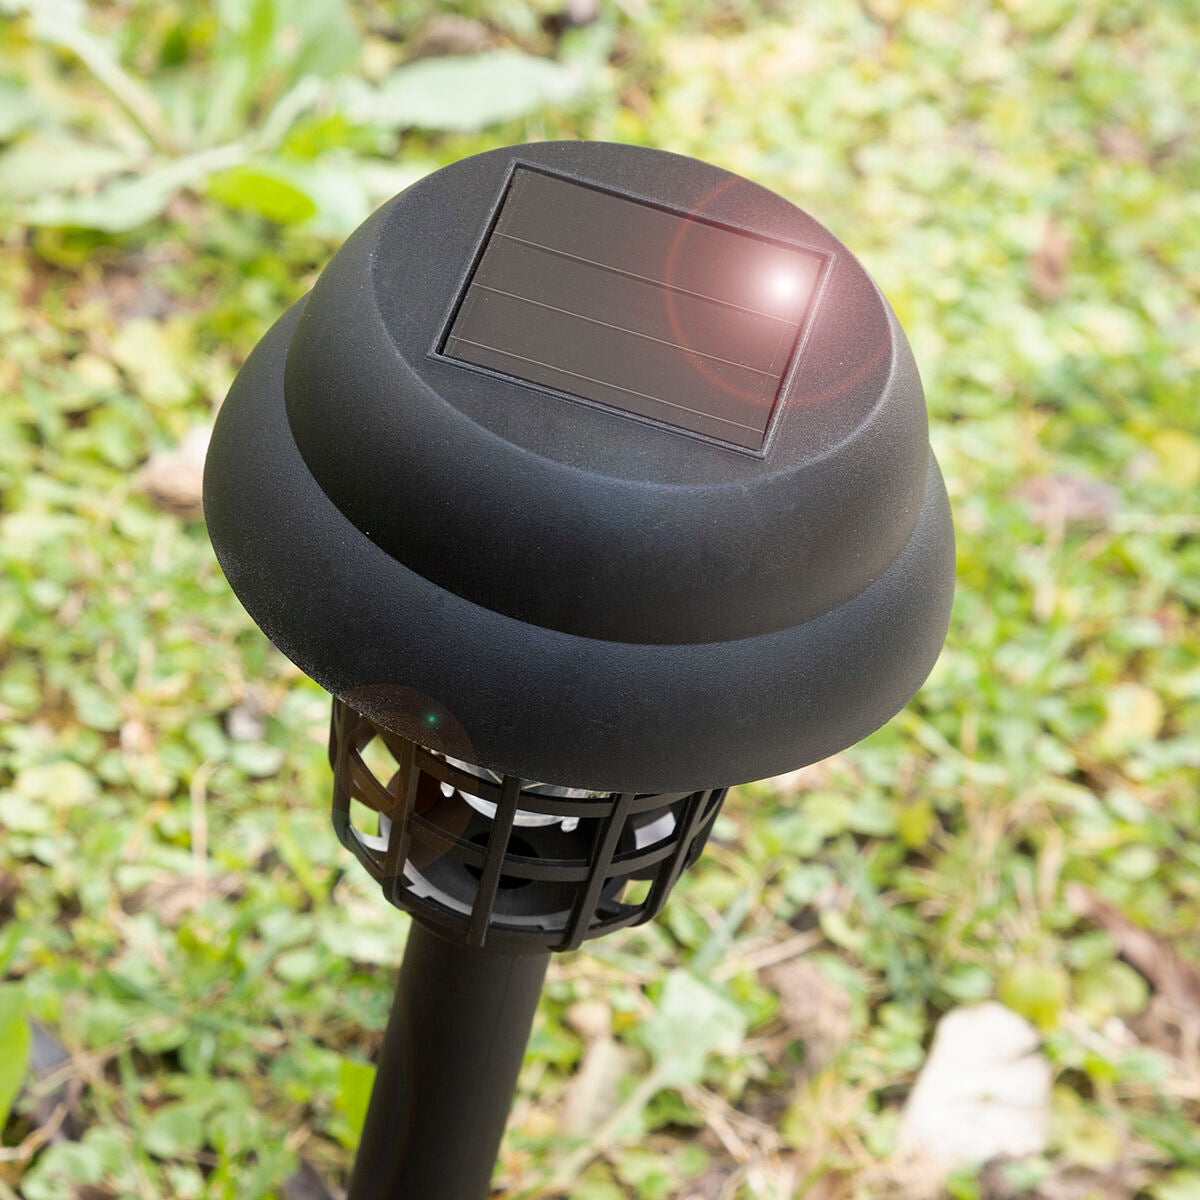 Zabijanie komarów słonecznych lampy ogrodowej Garlam Innovagoods